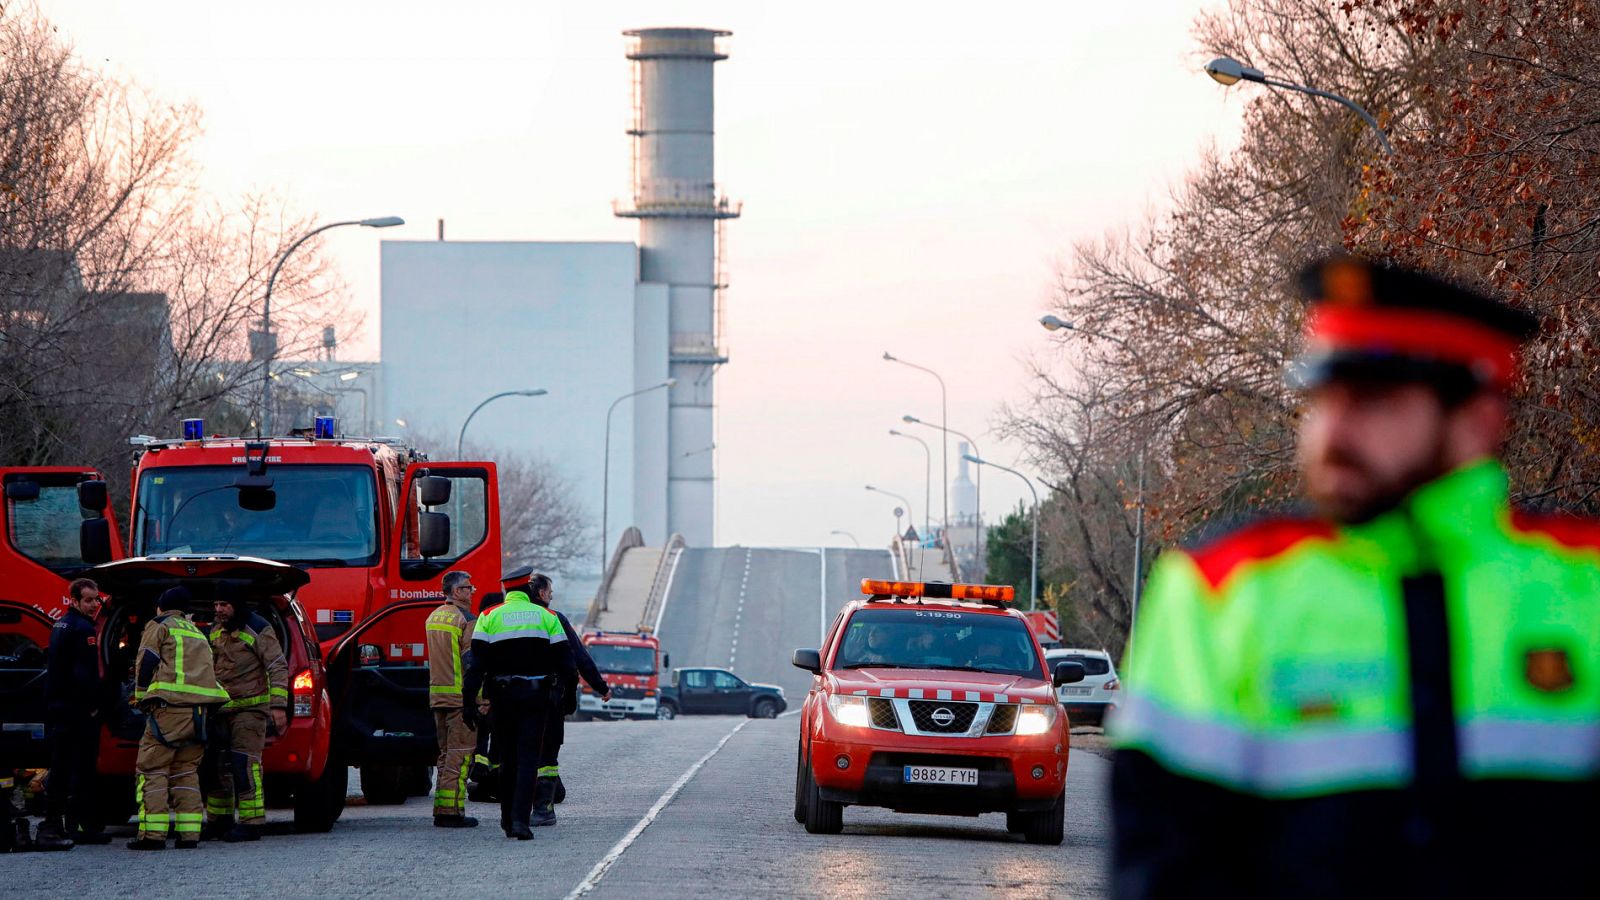 Bomberos y Mossos d'Esquadra a la entrada de la petroquímica de Tarragona donde se ha producido una explosión